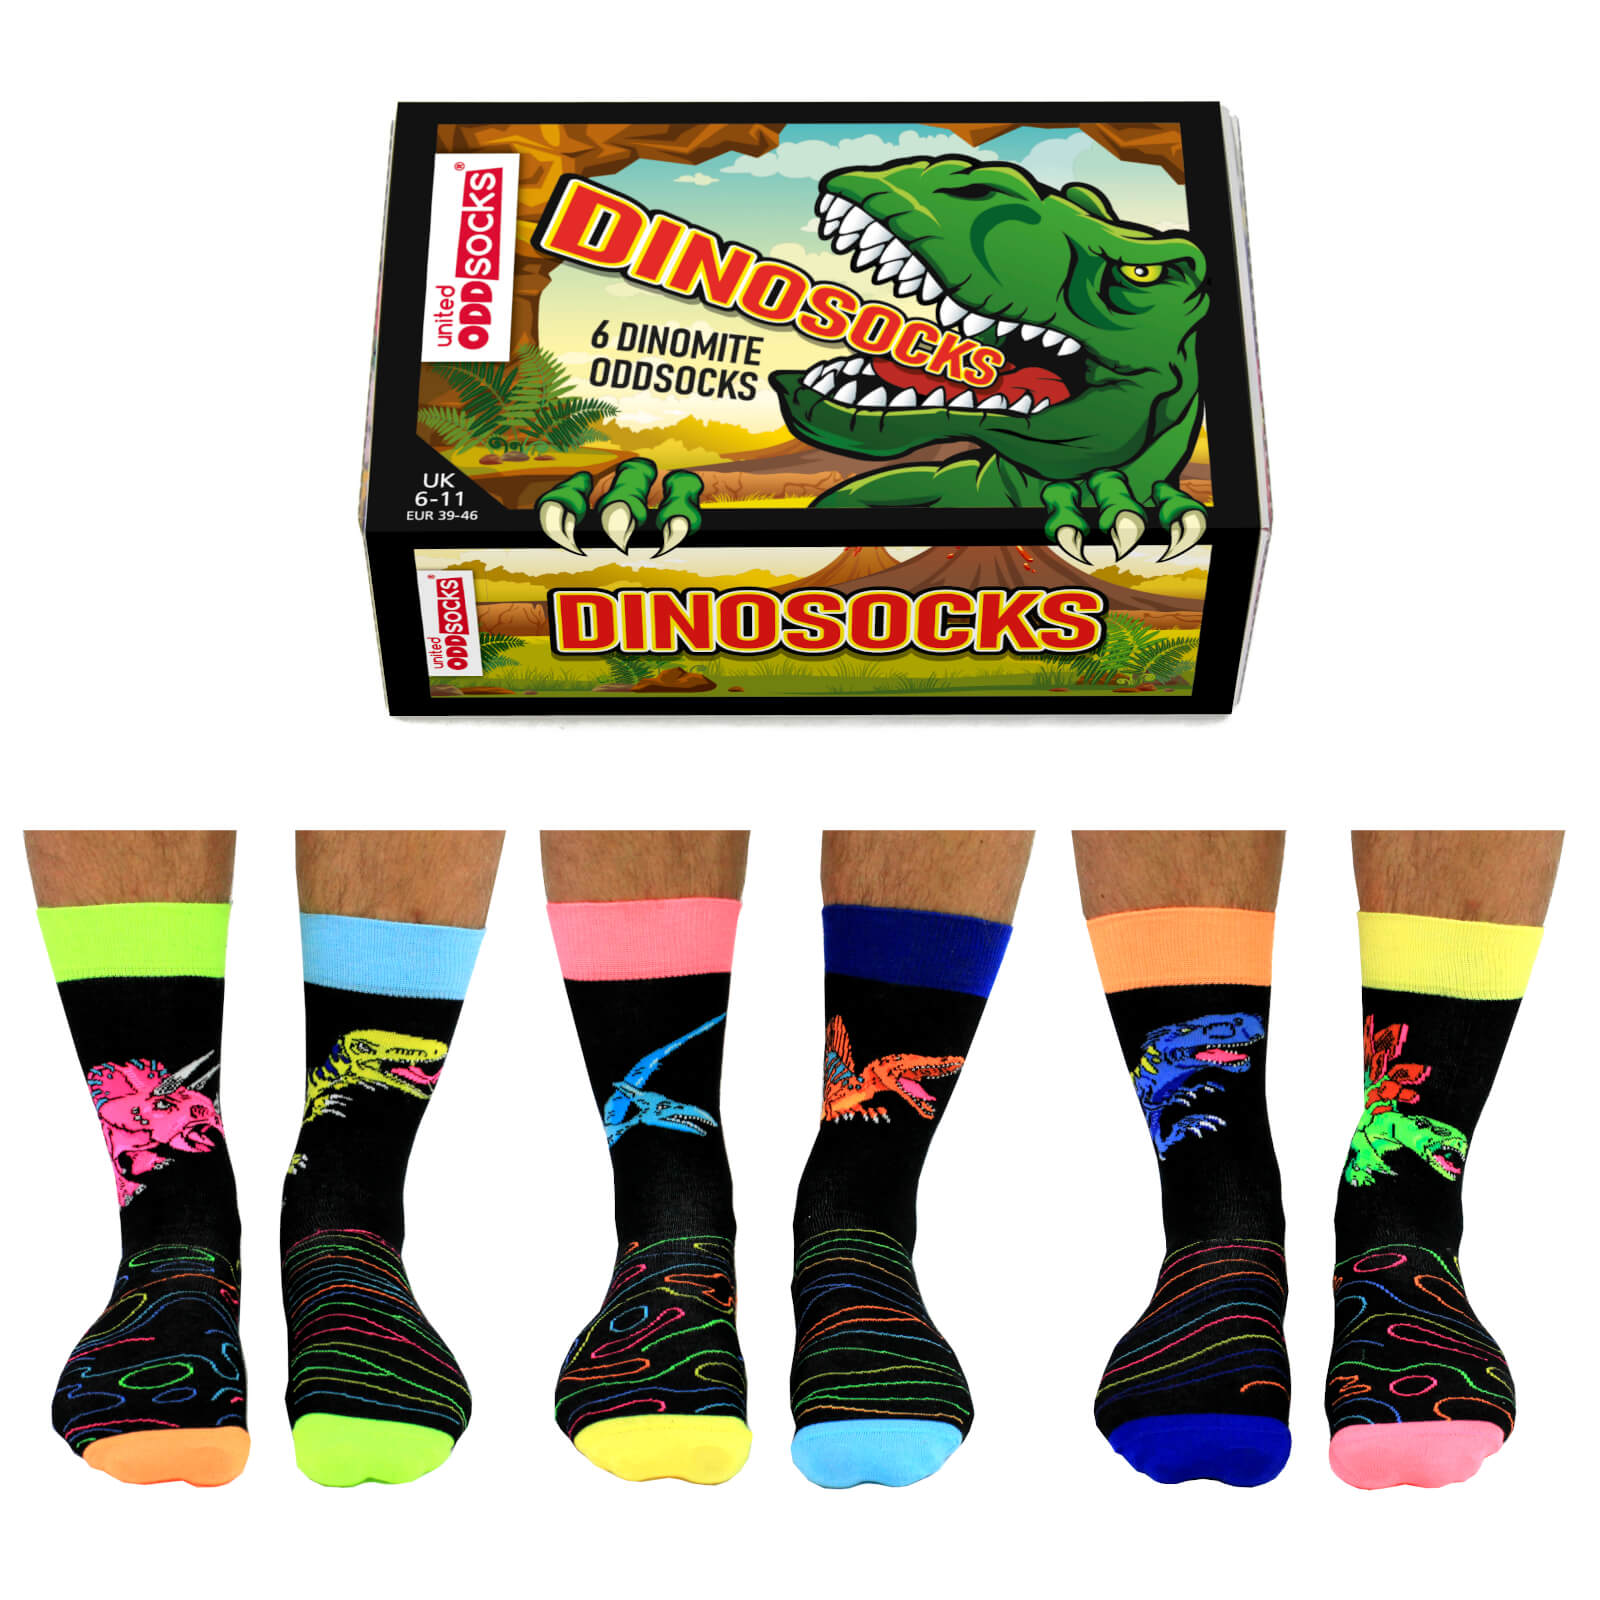 United Oddsocks Men's Dinosocks Socks Gift Set